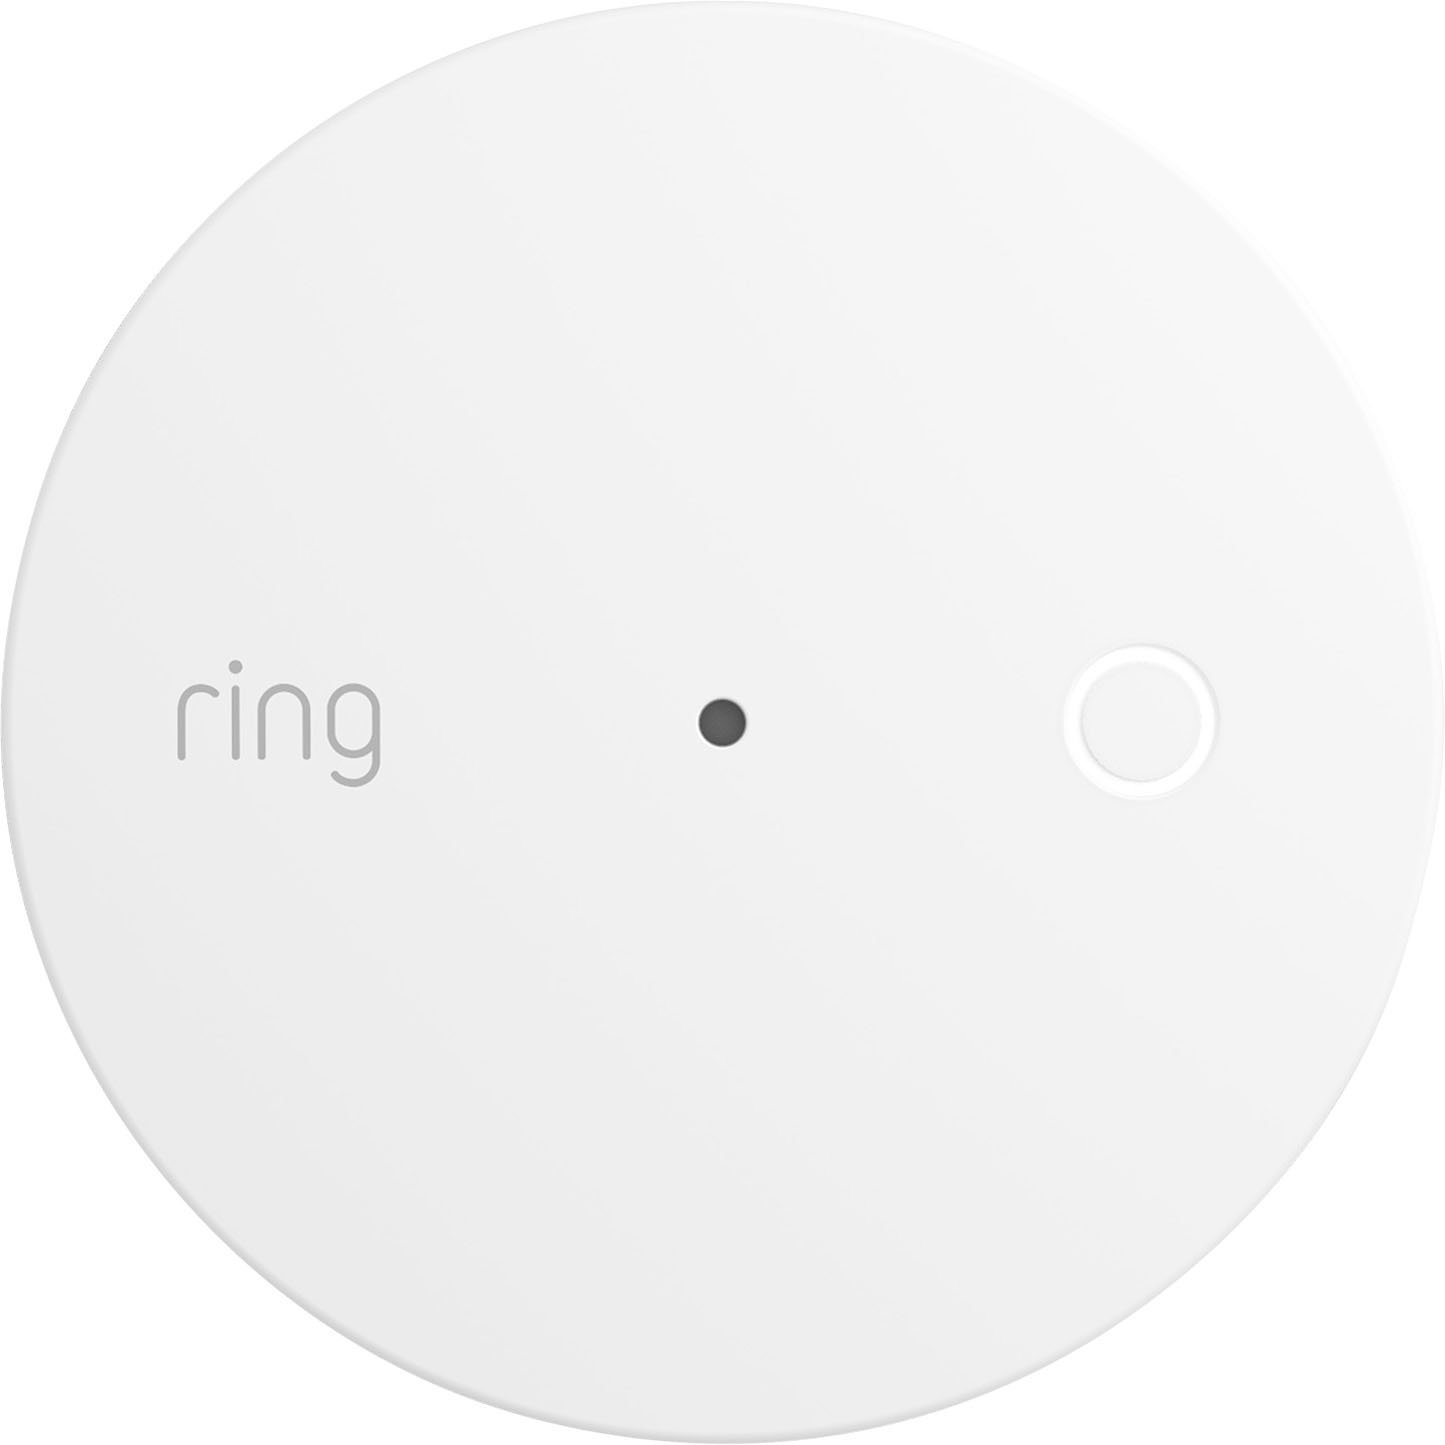 Ring Alarm Glass Break Sensor White B08TG6NCTS - Best Buy